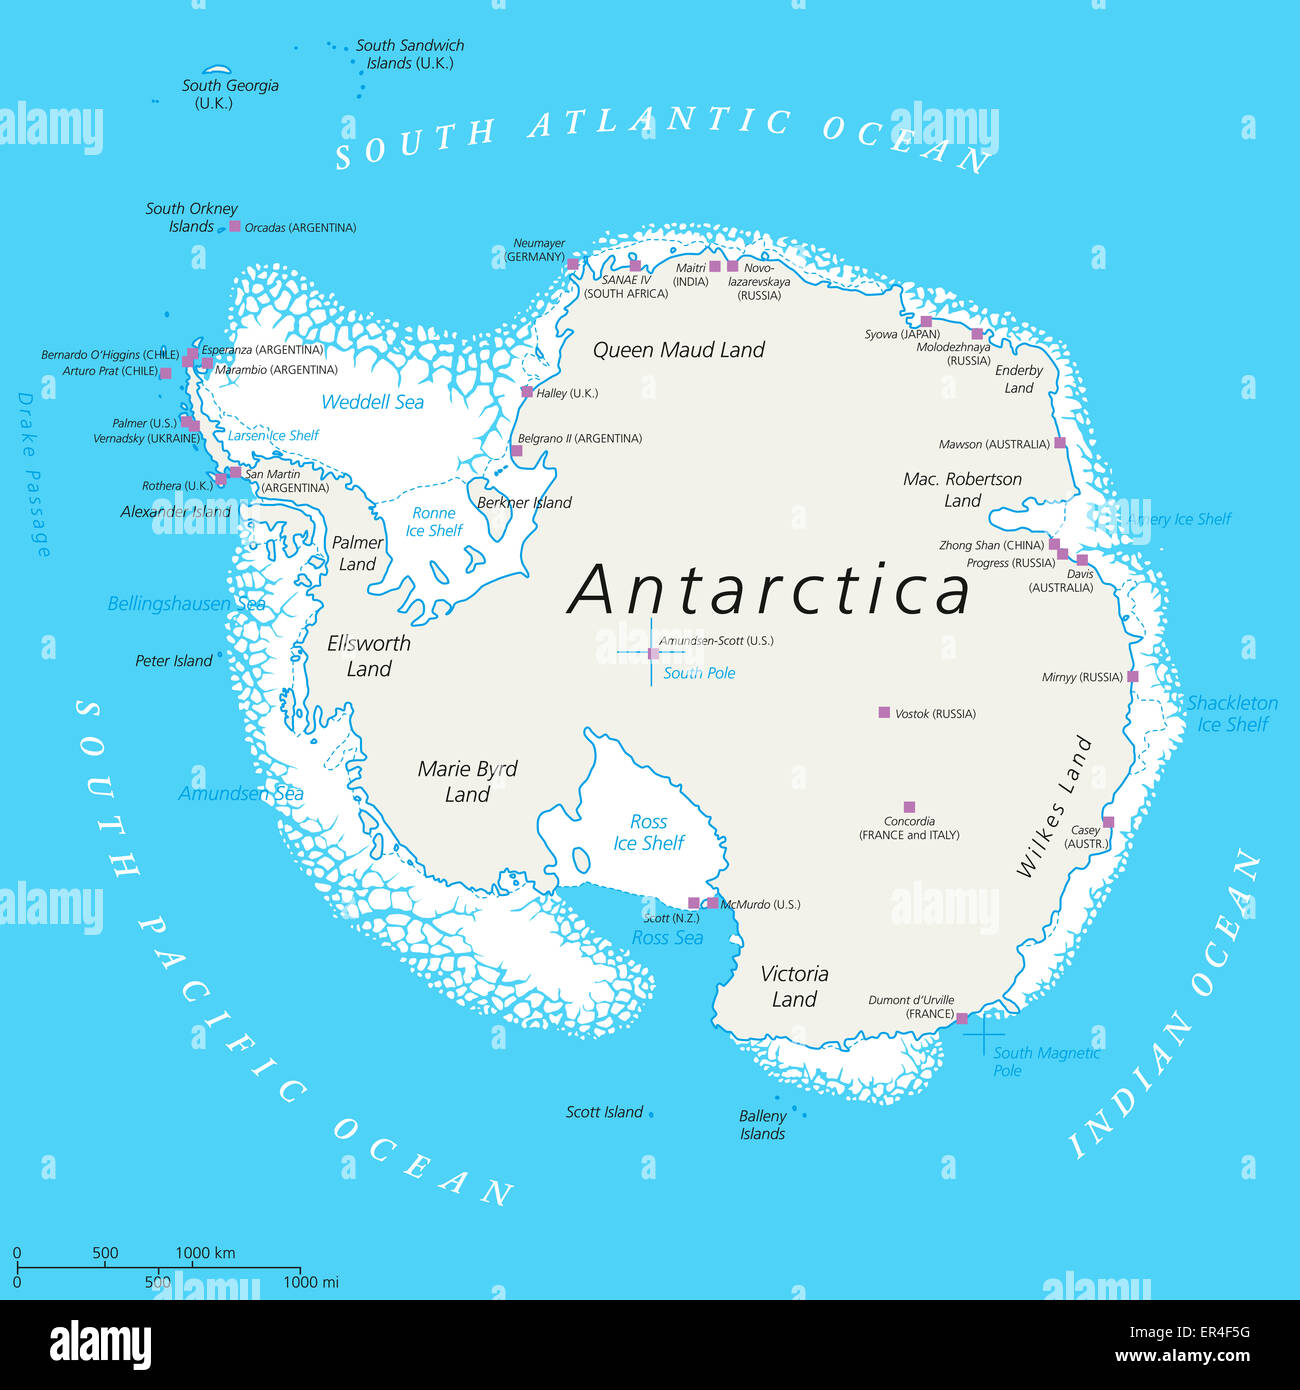 Antarktis Landkarte mit Südpol, wissenschaftliche Forschungsstationen und Eis Regale. Englische Beschriftung und Skalierung. Stockfoto